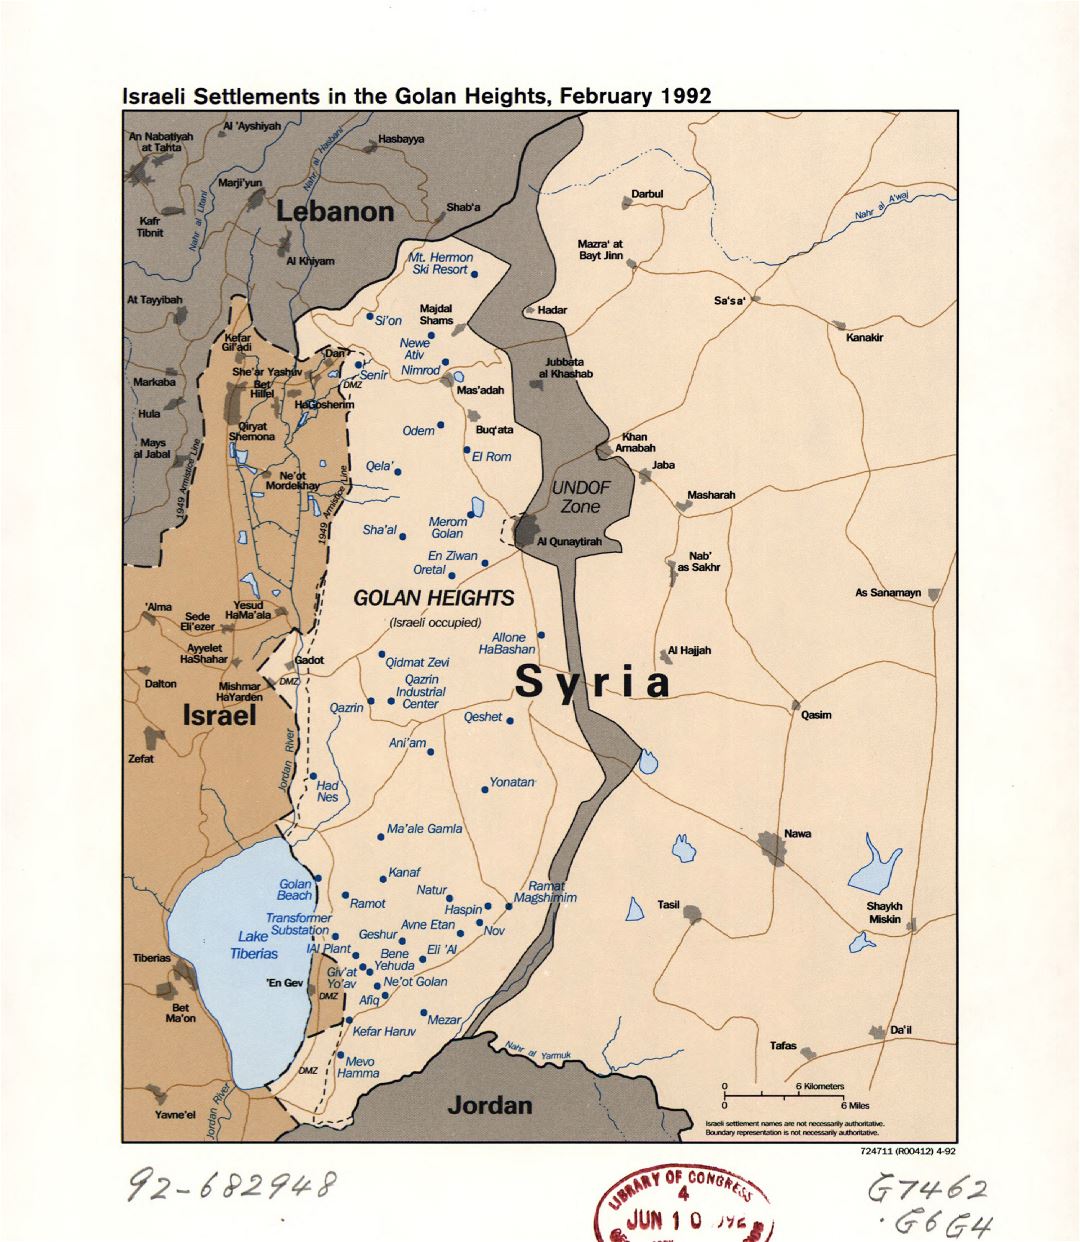 Grande detallado mapa de los asentamientos israelíes en los Altos del Golán - 1992